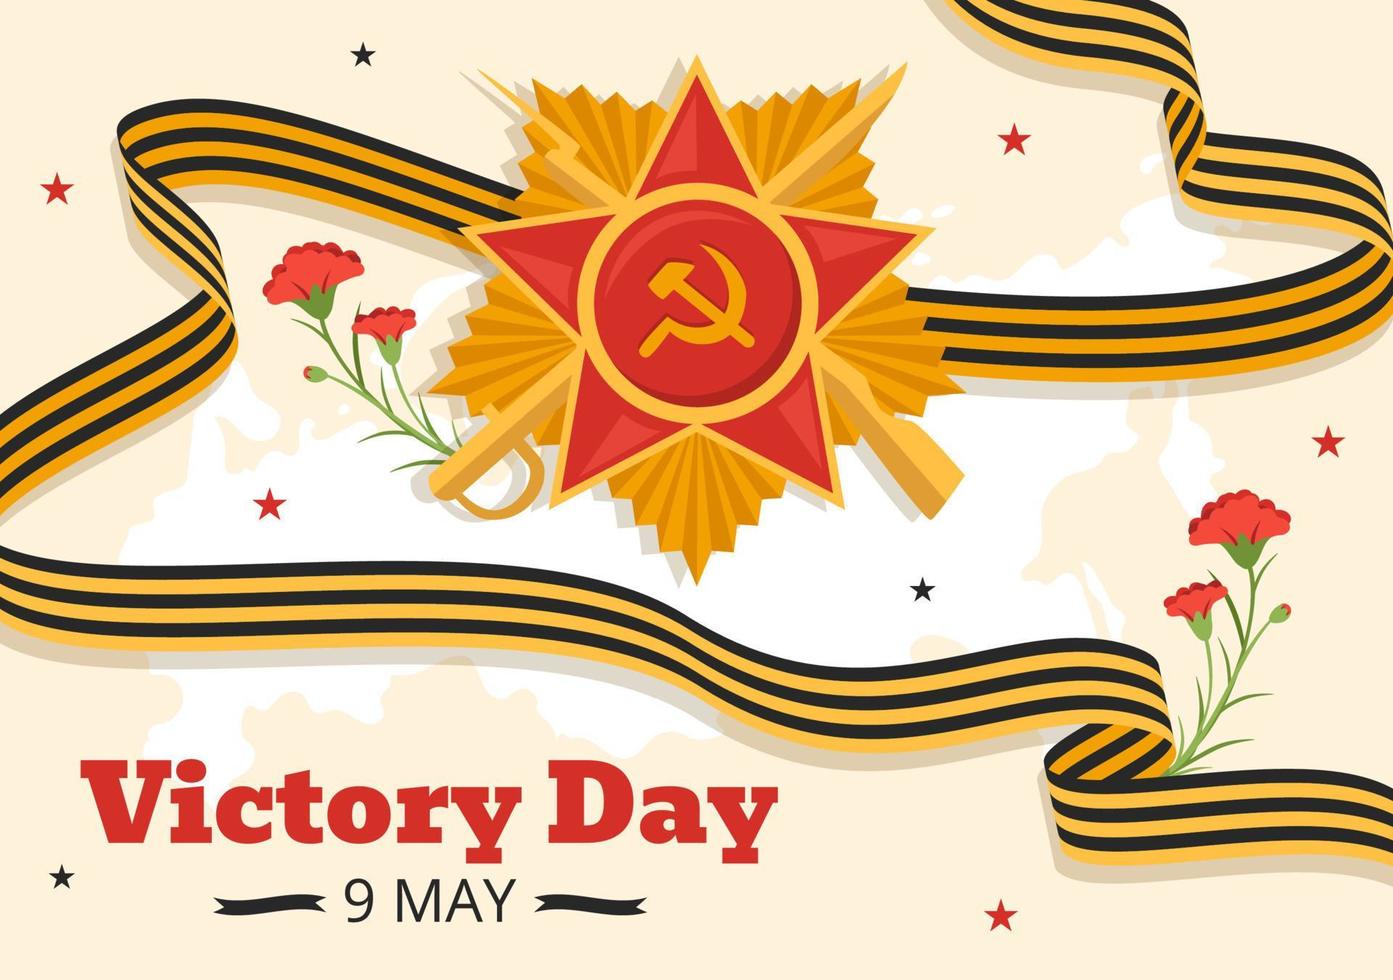 ruso victoria día en mayo 9 9 ilustración con medalla estrella de el héroe y genial patriótico guerra en plano dibujos animados mano dibujado para aterrizaje página plantillas vector